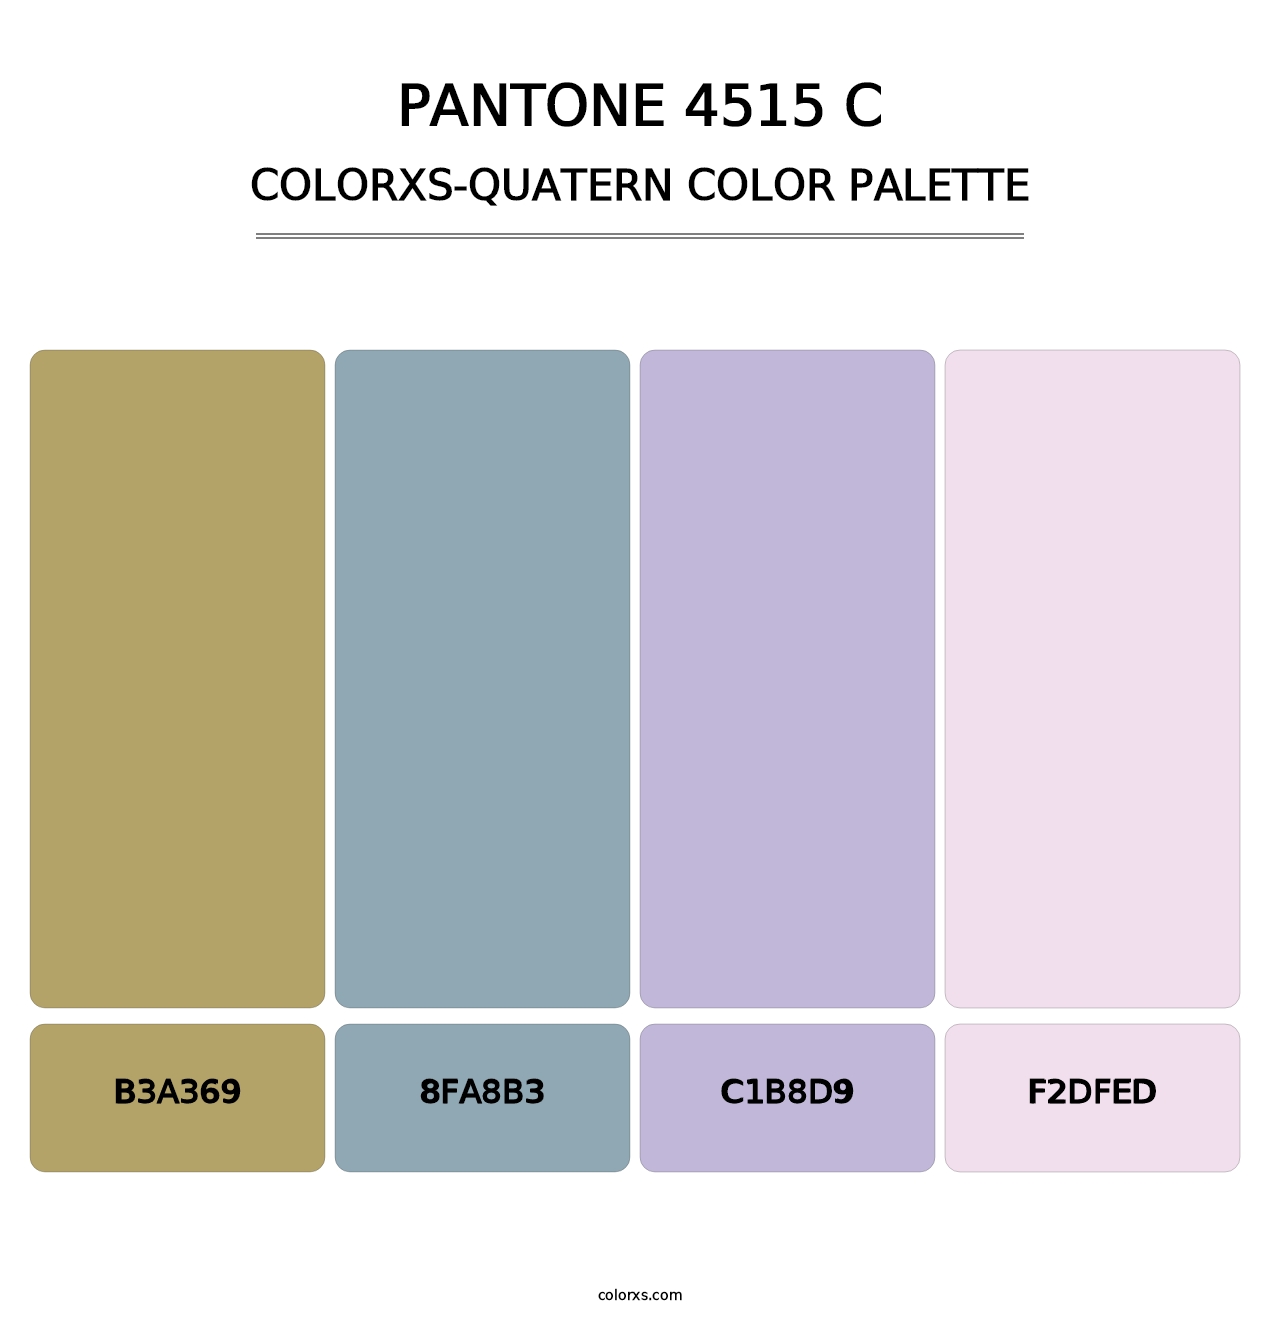 PANTONE 4515 C - Colorxs Quatern Palette